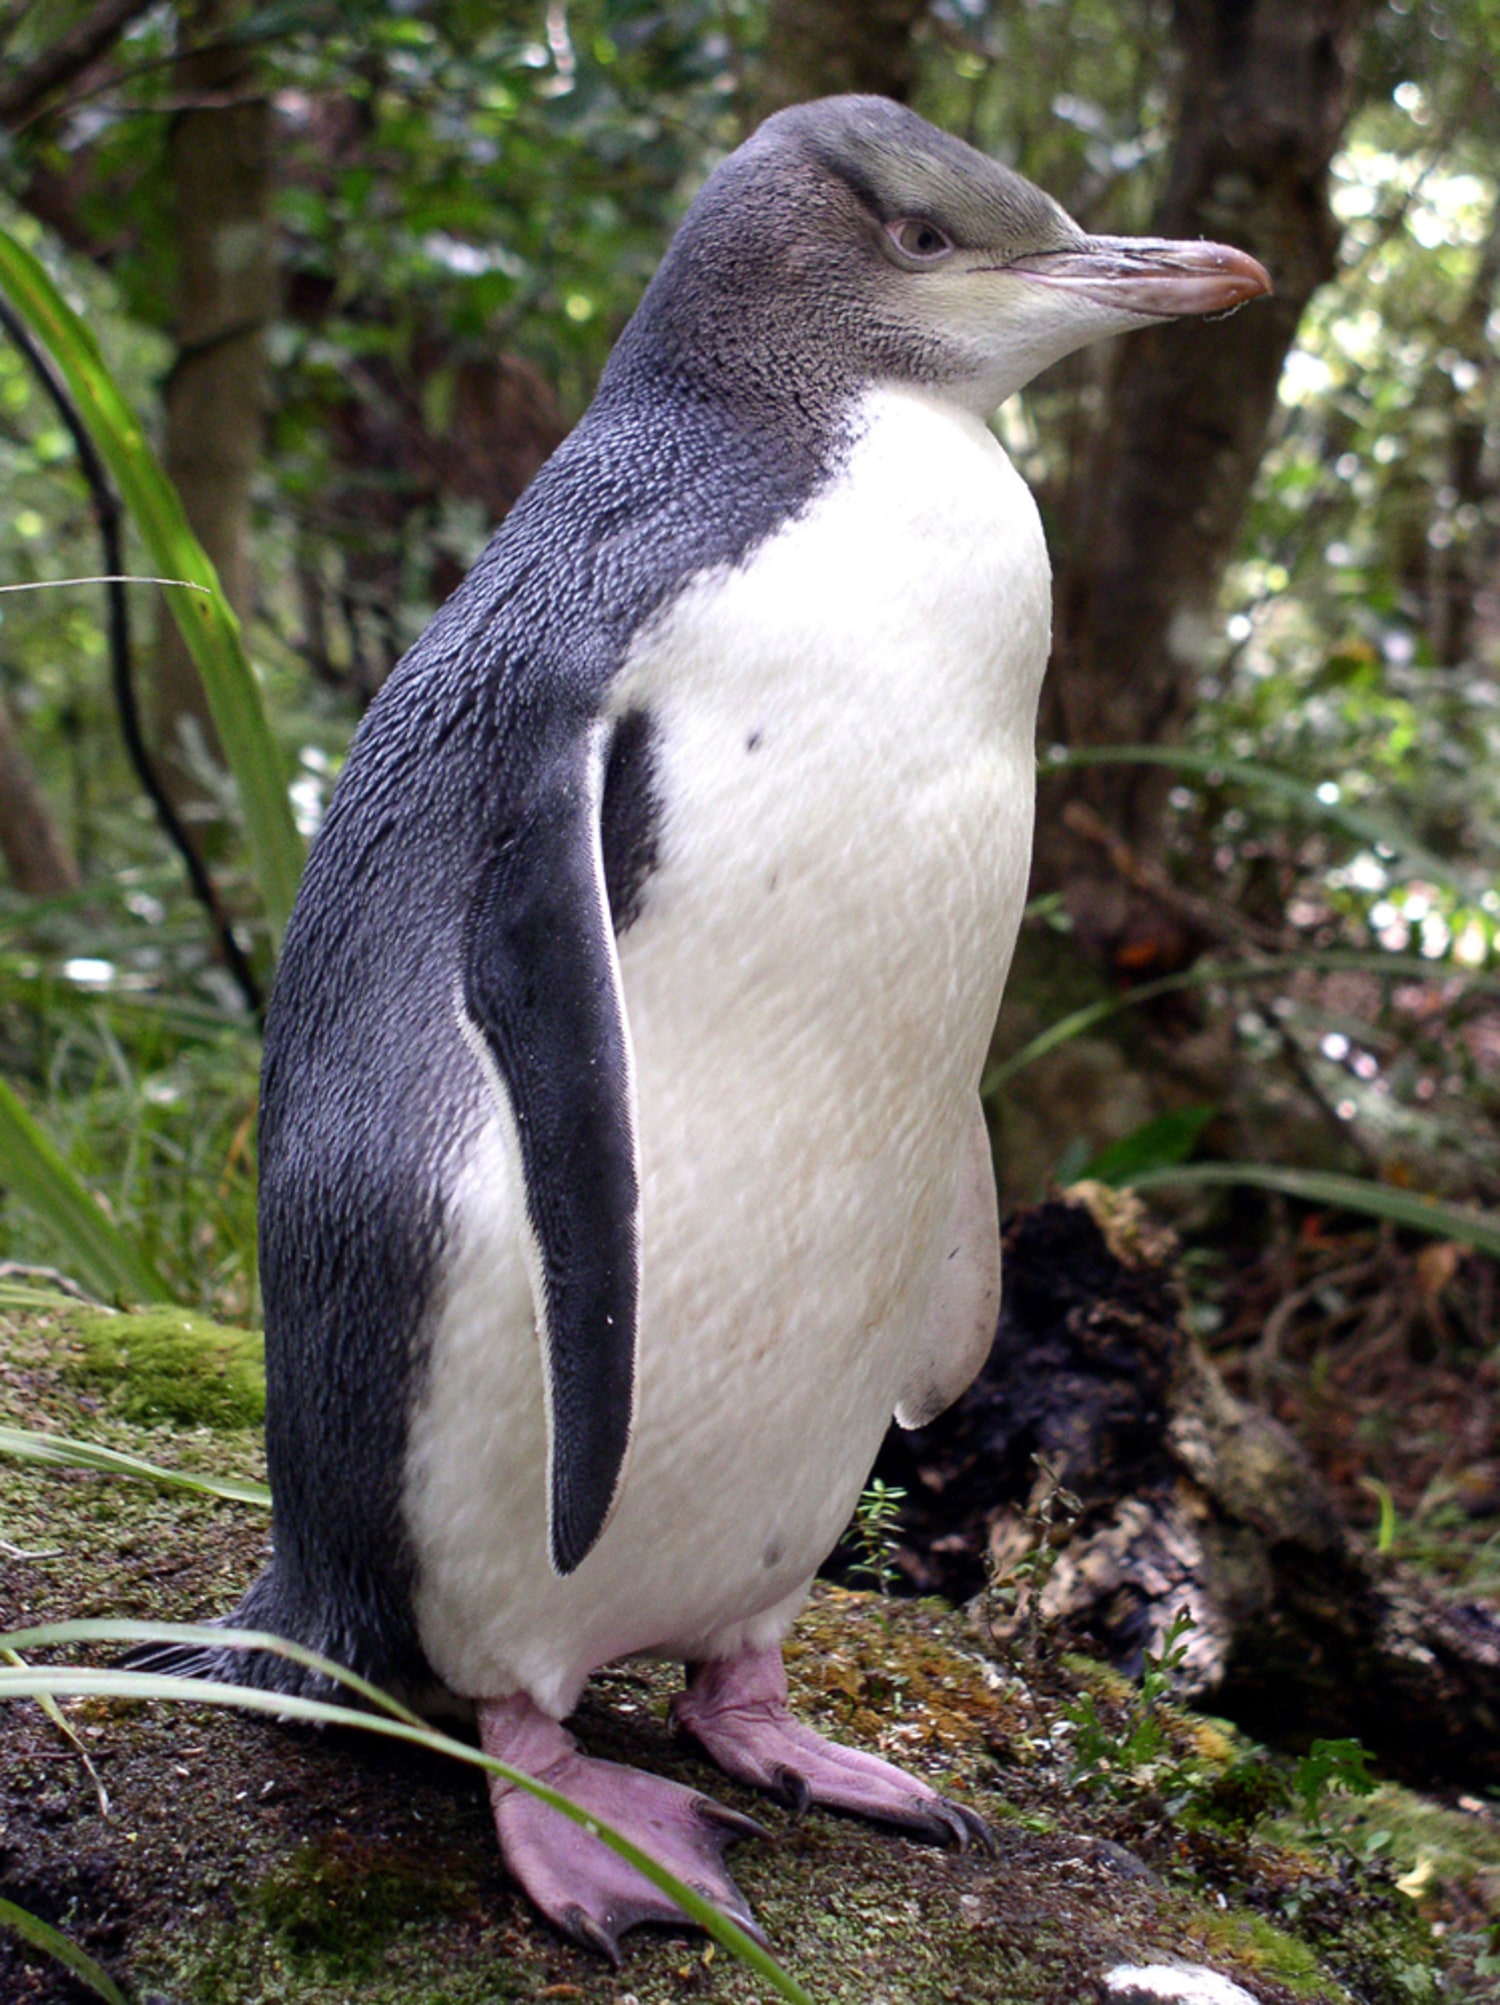 Mystery illness stalks world's rarest penguin